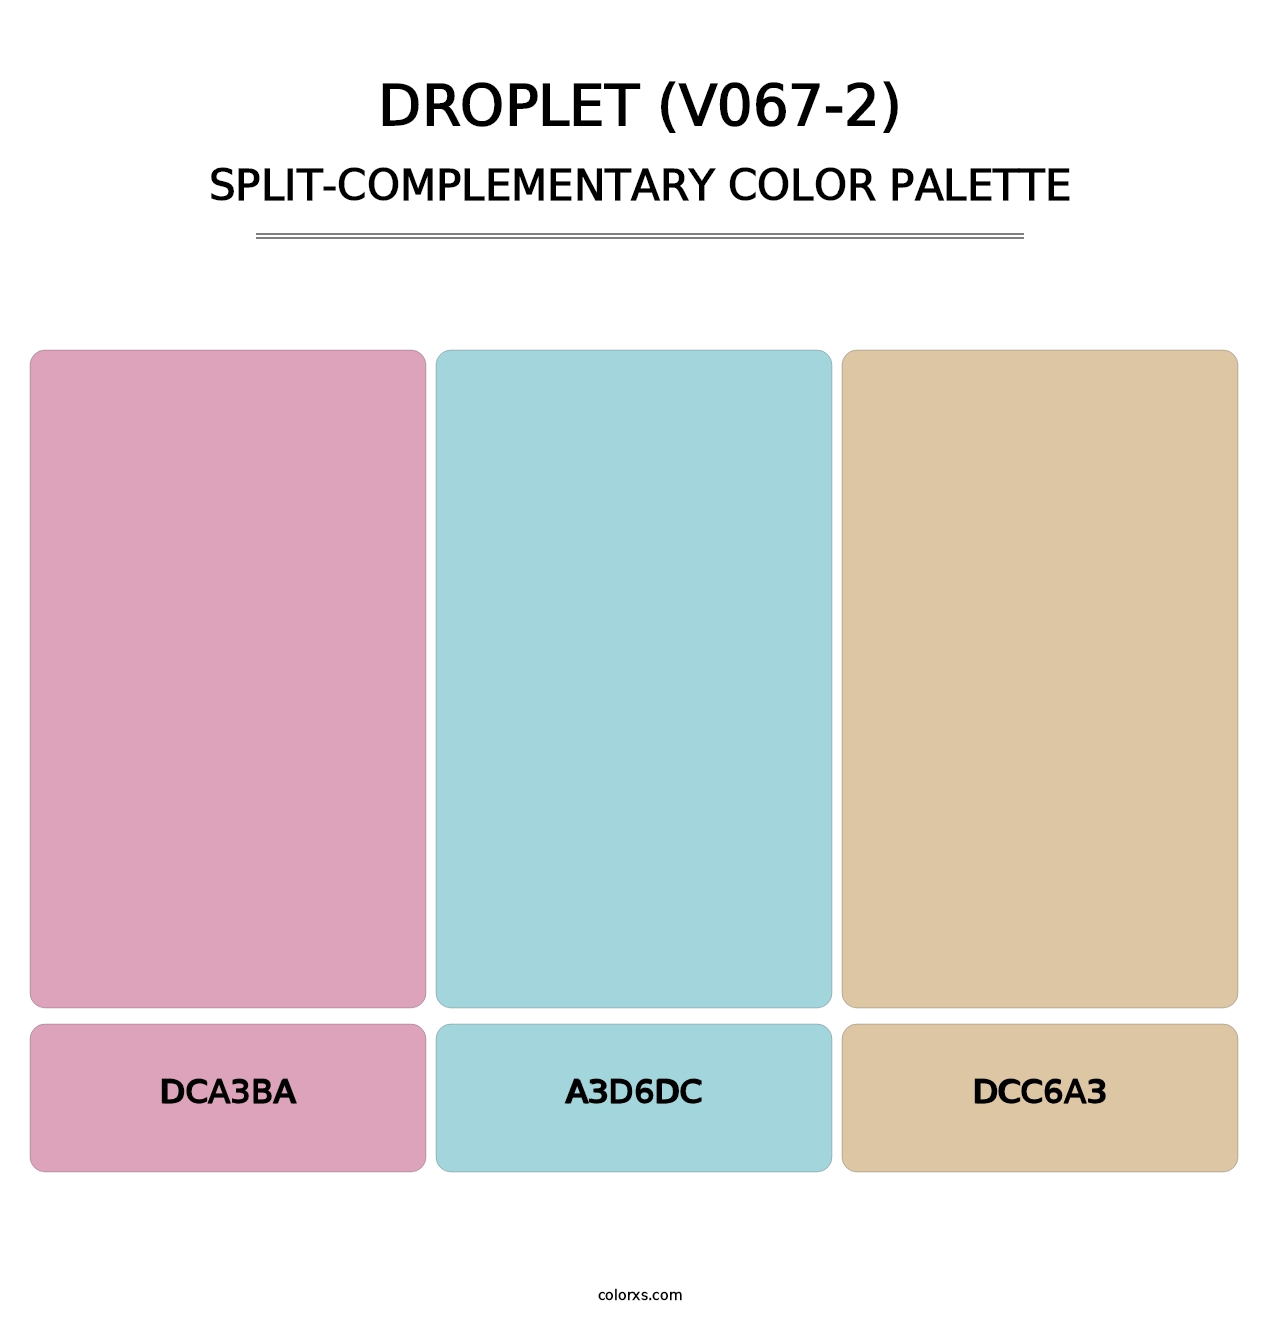 Droplet (V067-2) - Split-Complementary Color Palette